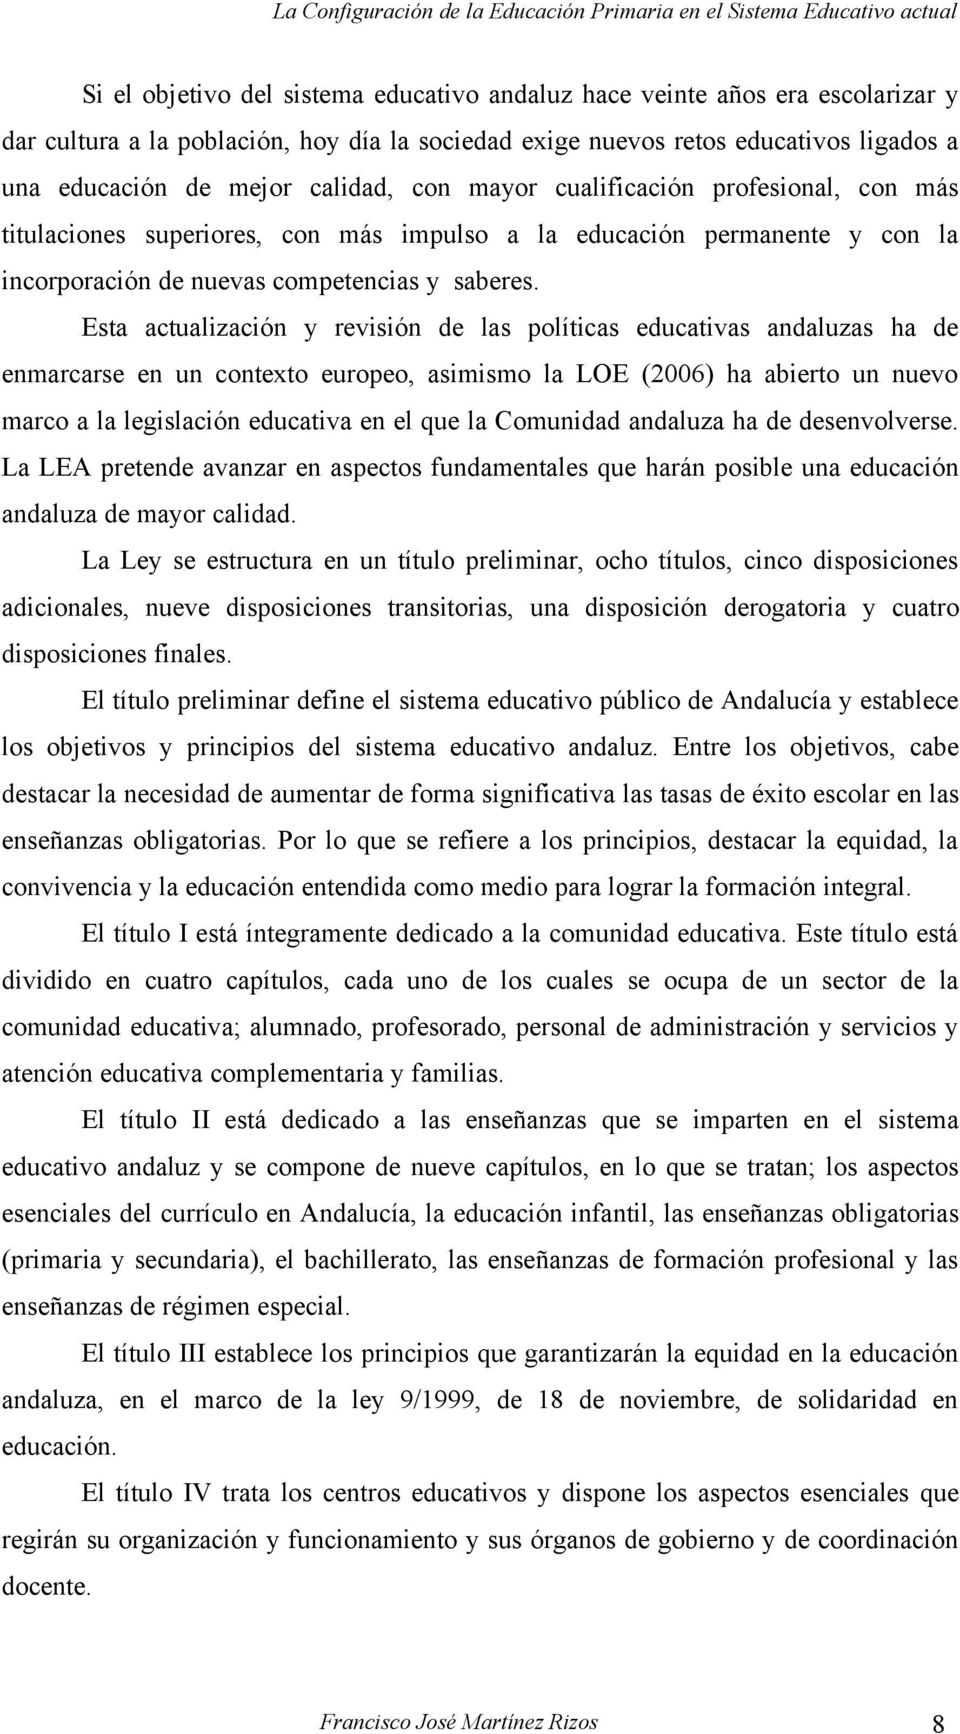 Esta actualización y revisión de las políticas educativas andaluzas ha de enmarcarse en un contexto europeo, asimismo la LOE (2006) ha abierto un nuevo marco a la legislación educativa en el que la